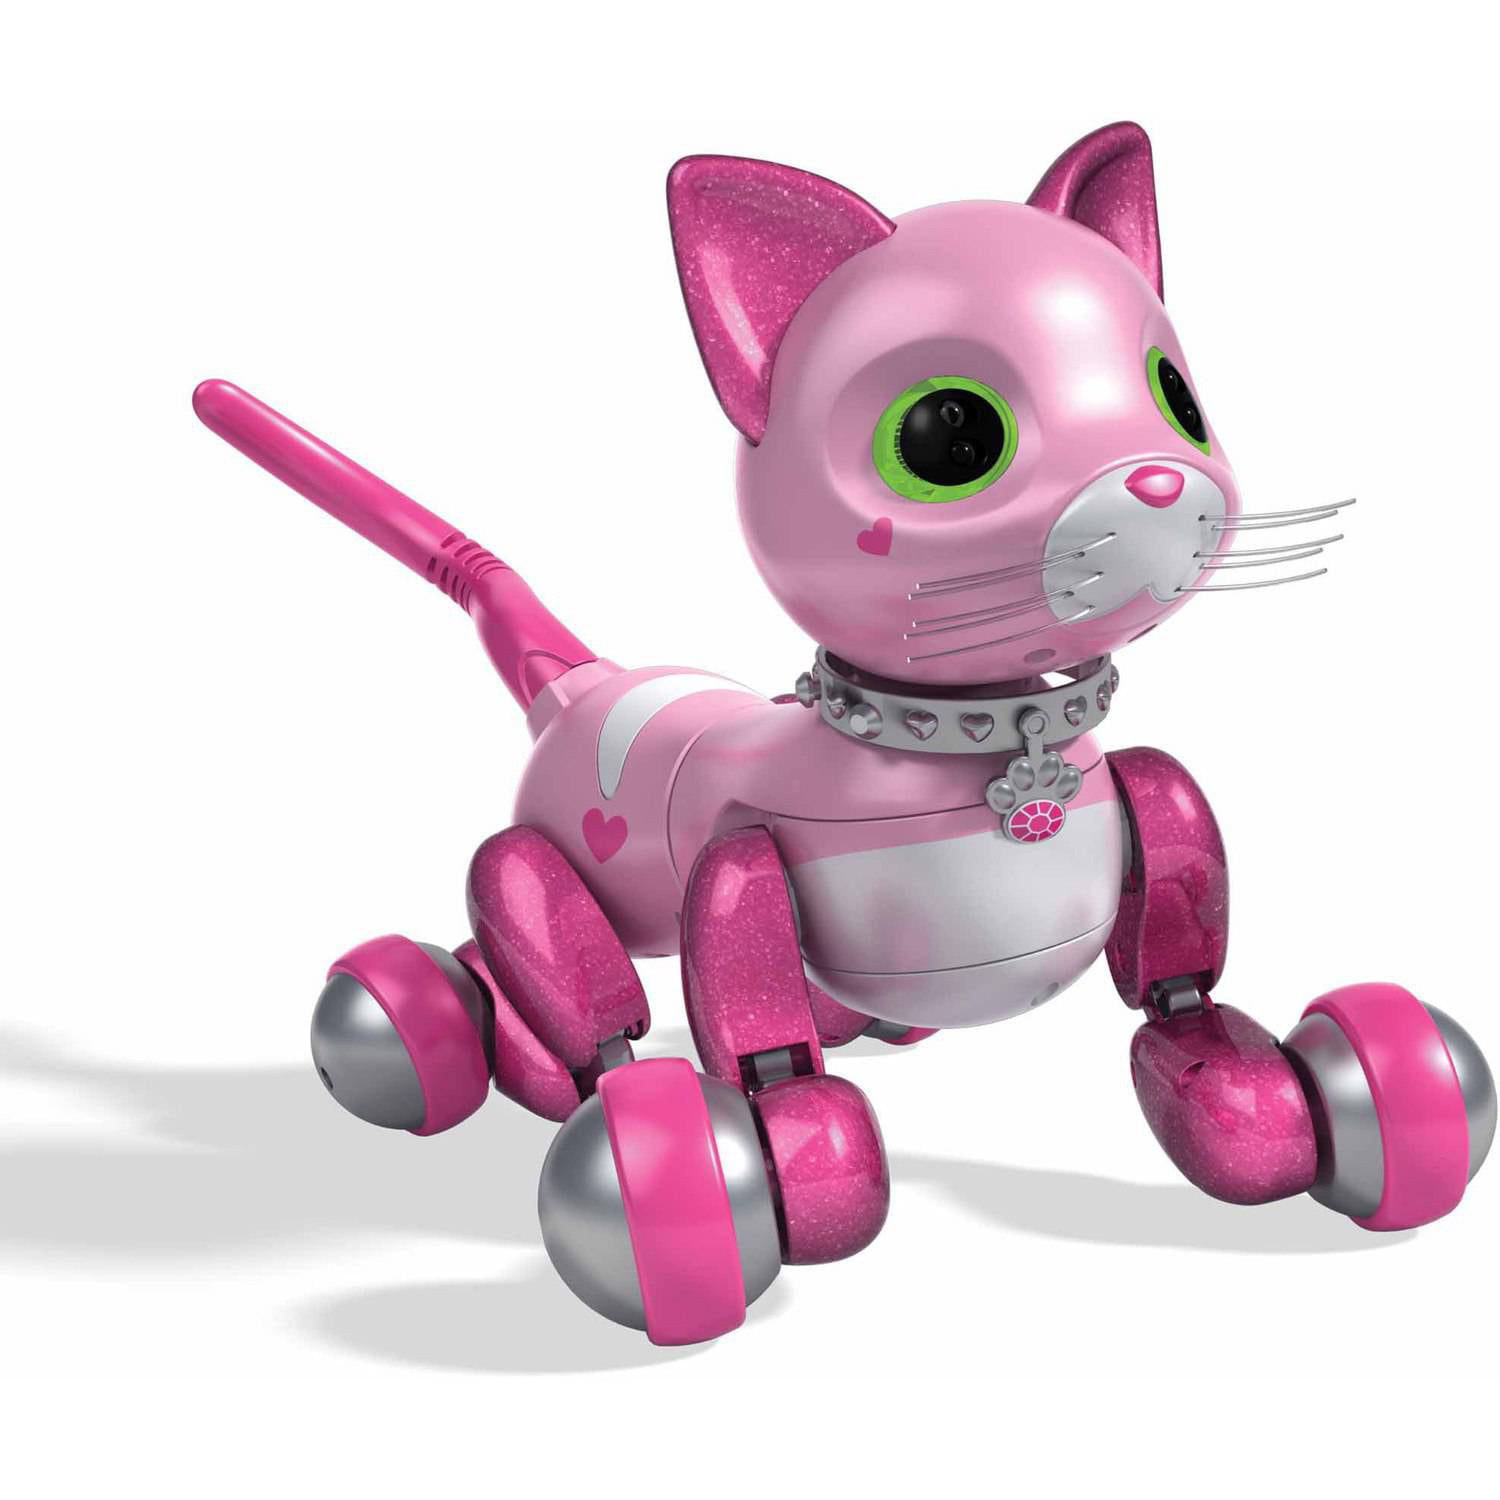 Игры робот кошка. Робот zoomer Kitty. Zoomer Kitty Pink робот. Робокот MARSCAT. Интерактивная игрушка робот zoomer Kitty робот-котенок.